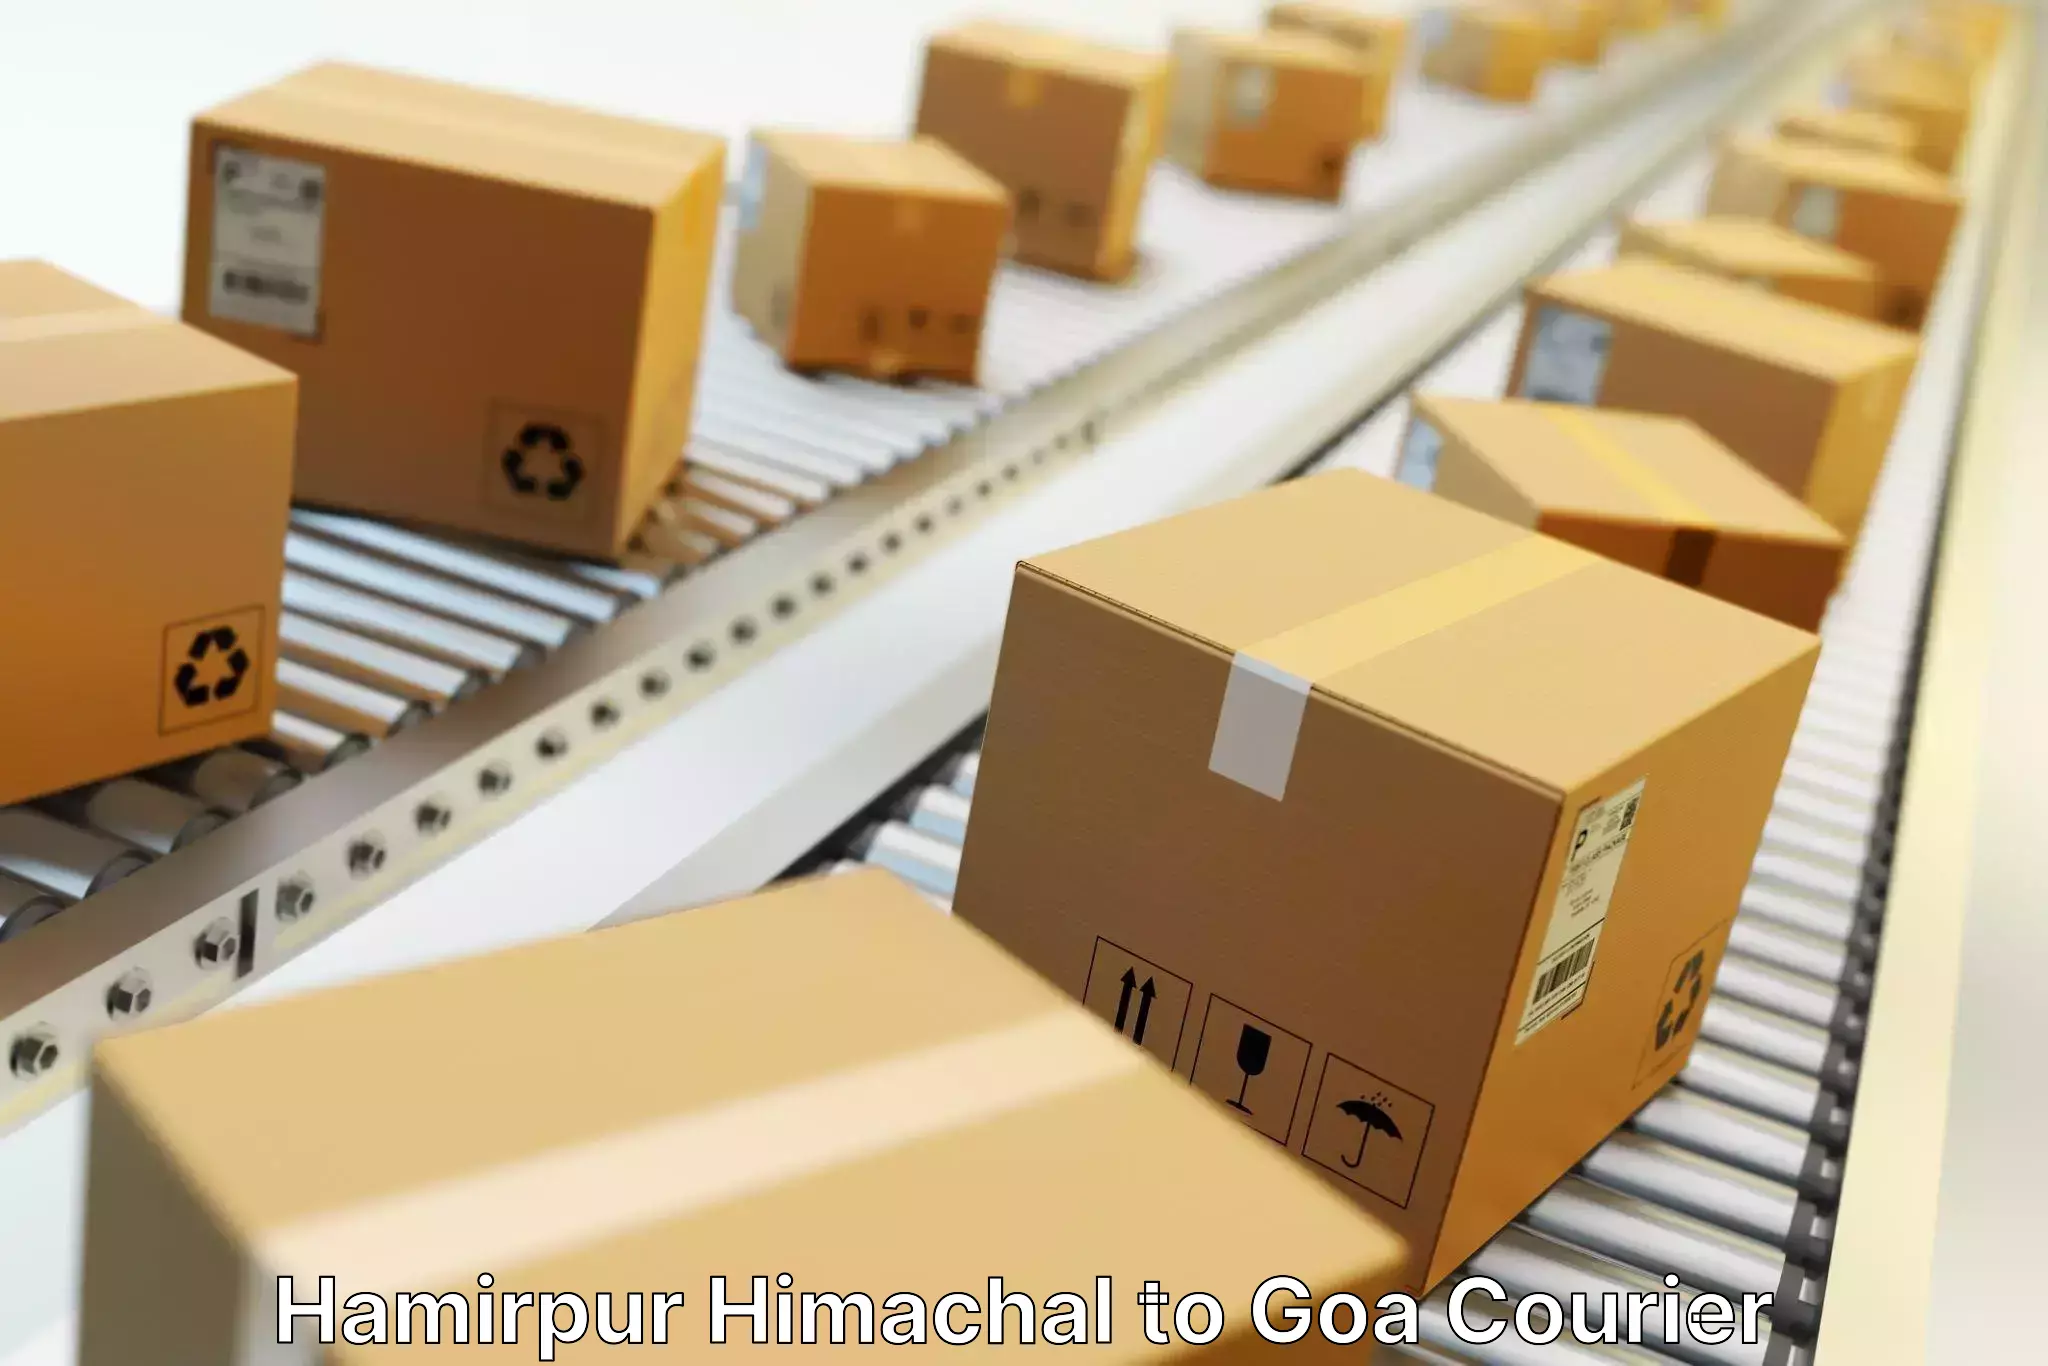 Flexible parcel services Hamirpur Himachal to IIT Goa